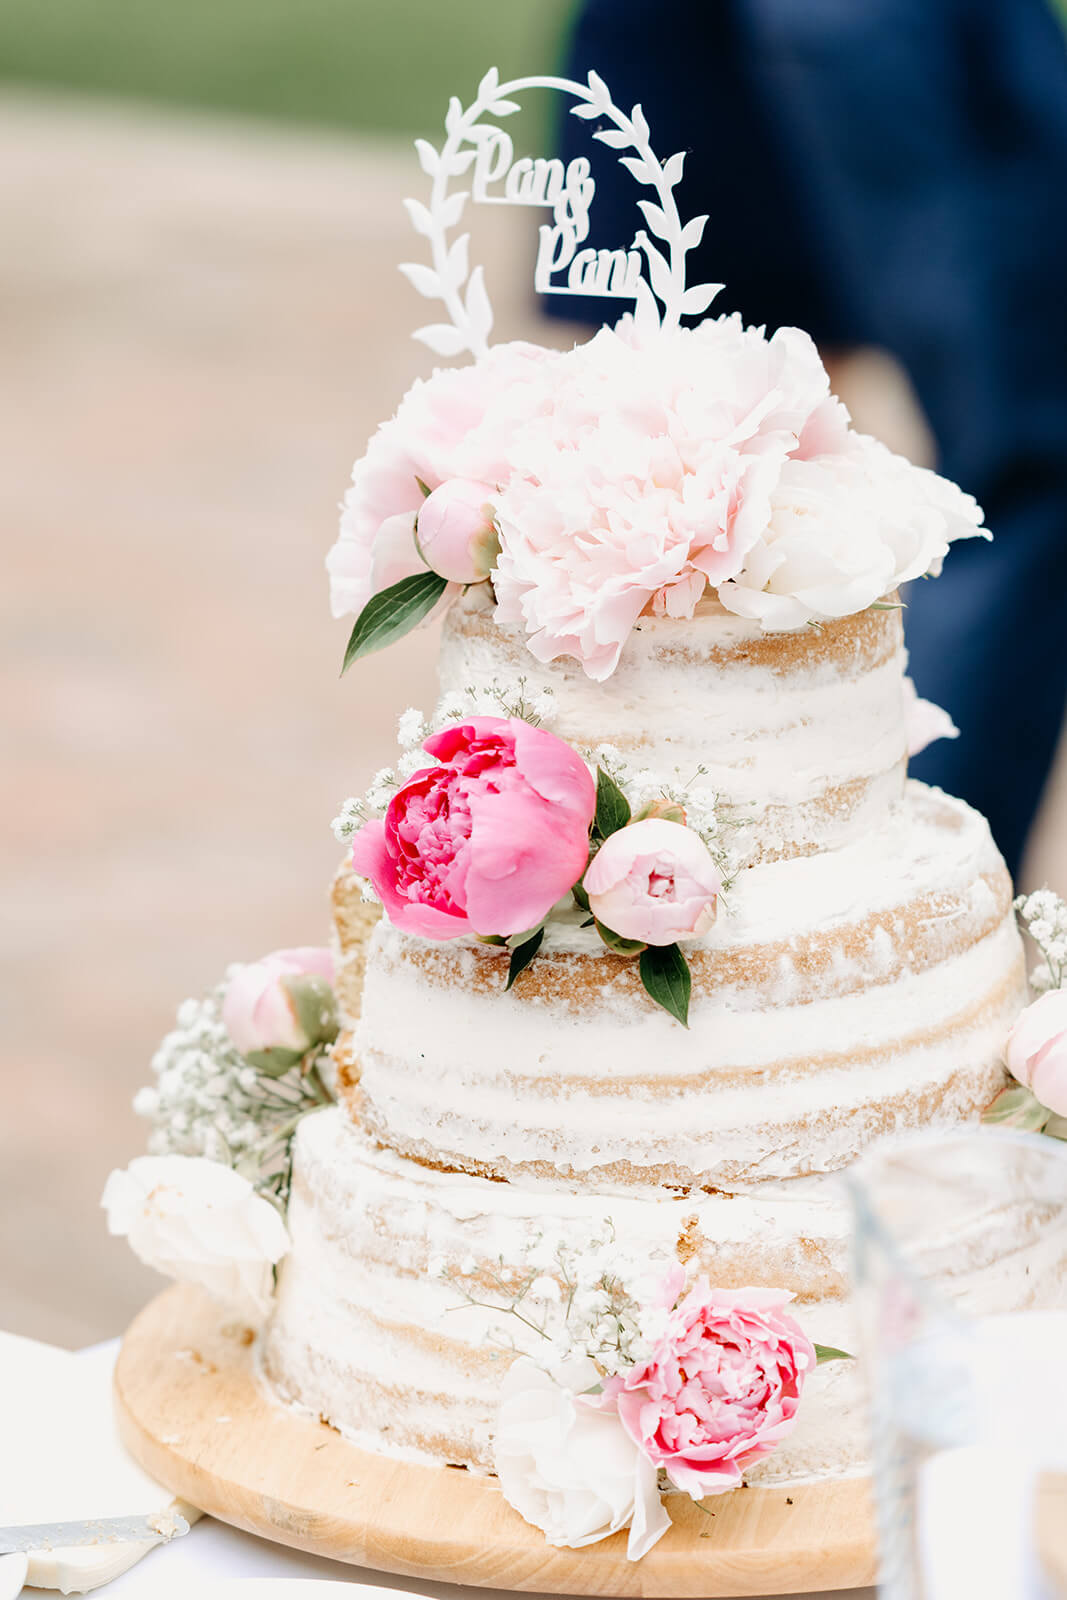 Svatební dort zdobený květy pivoněk